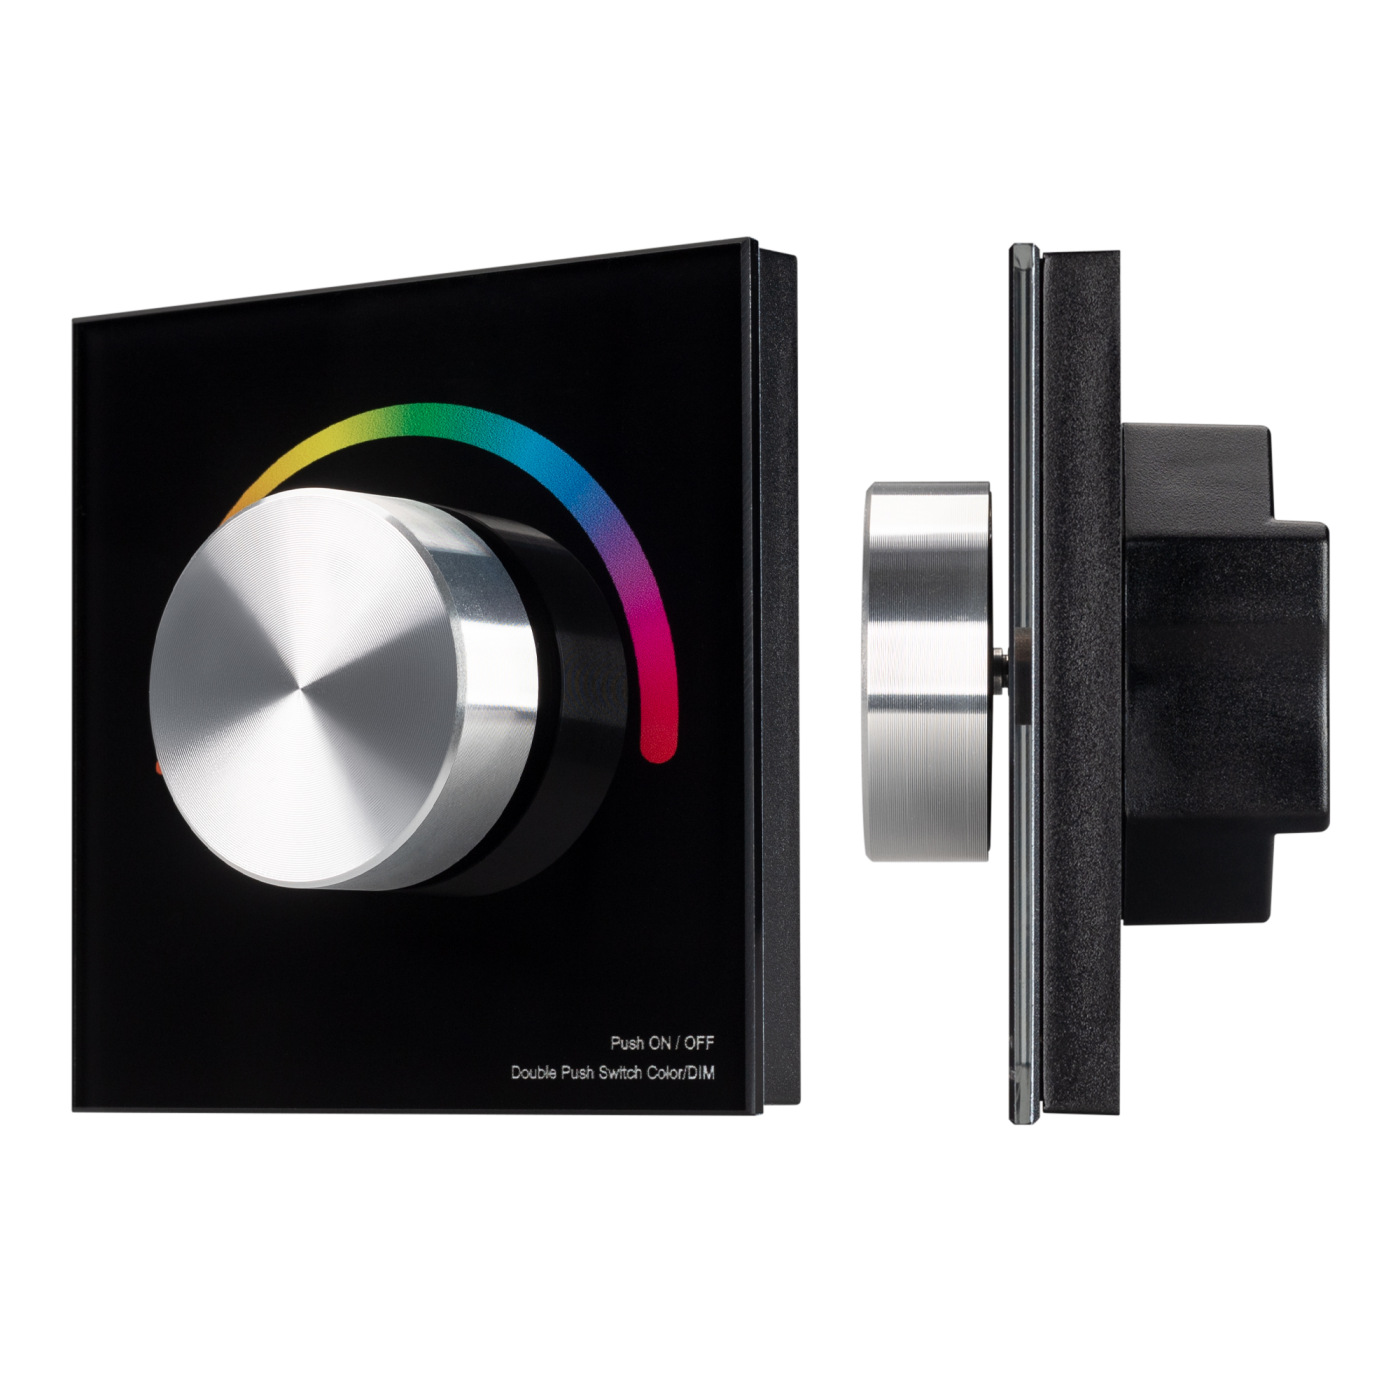 Панель SMART-P5-RGB-G-IN Black (3V, Rotary, 2.4G) (Arlight, IP20 Пластик, 5 лет) набор для крепления стеклянной дверки двустворчатой 90 мм пластик чёрный